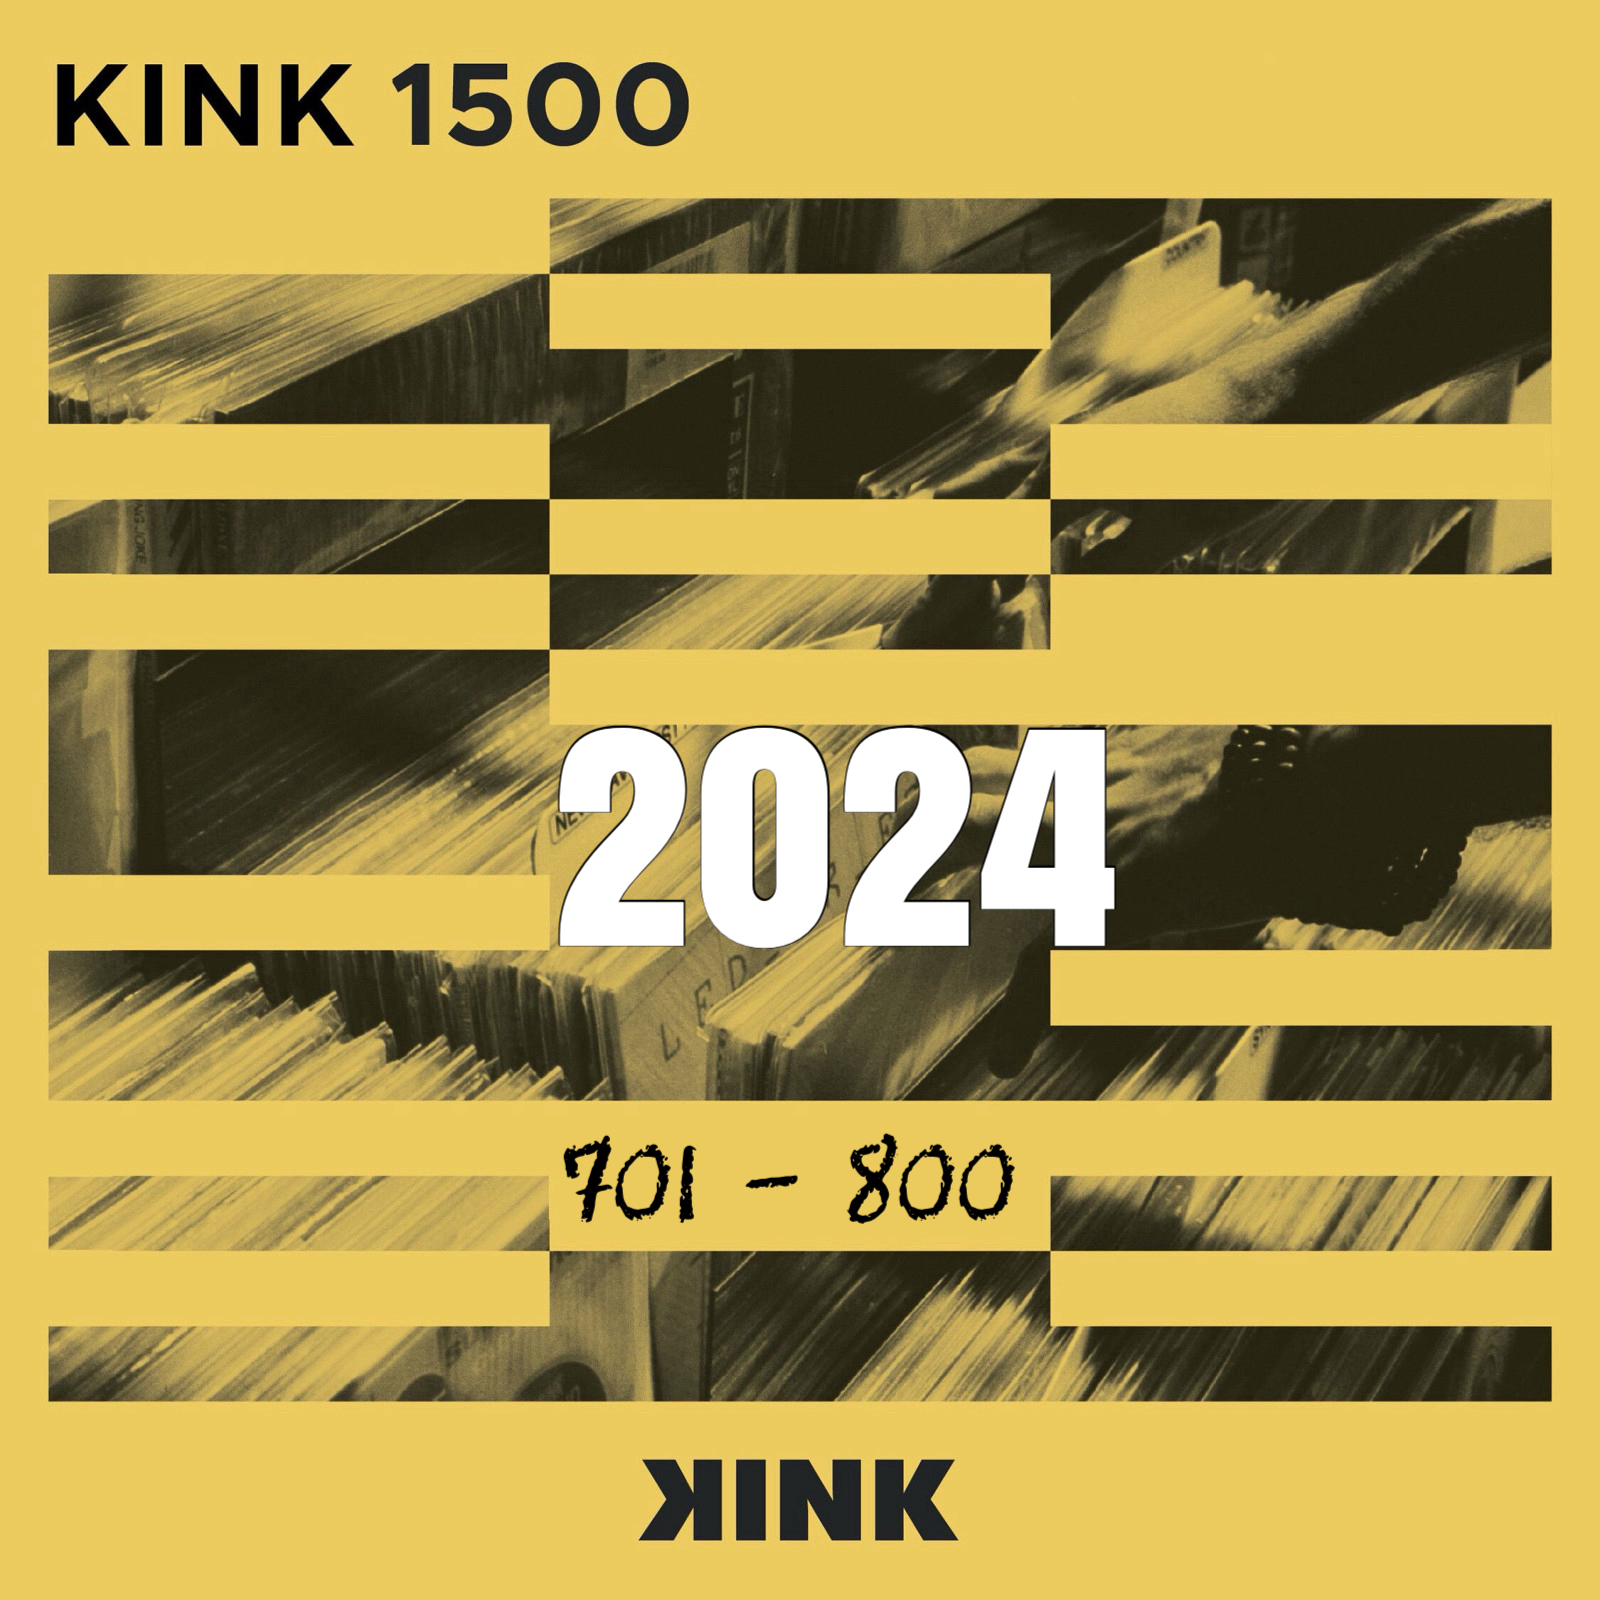 VA - Kink 1500 (2024) (0701- 0800)